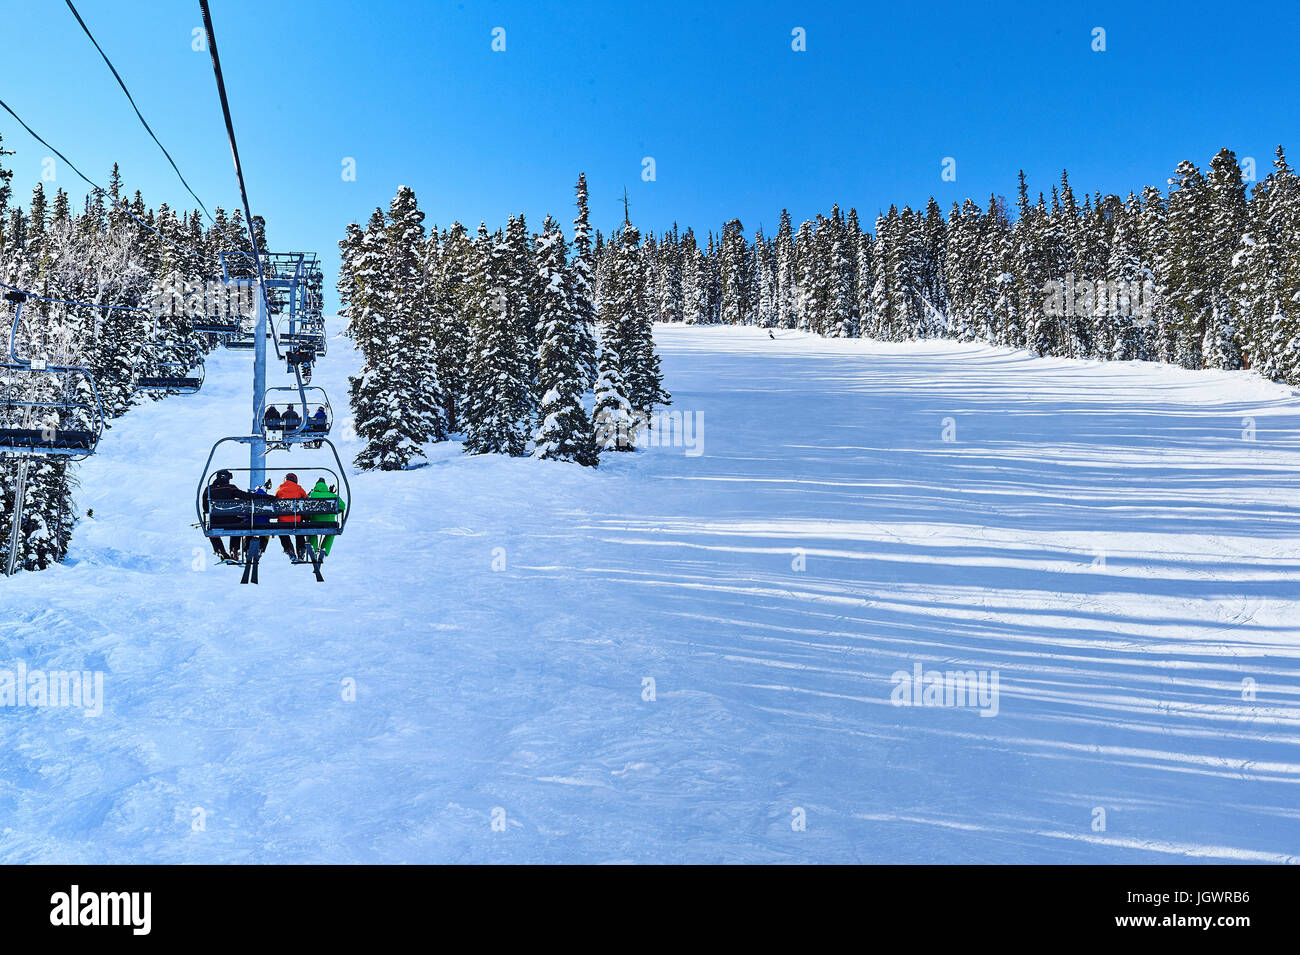 Vista posteriore di sciatori su impianti di risalita fino in movimento paesaggi innevati, Aspen, Colorado, STATI UNITI D'AMERICA Foto Stock